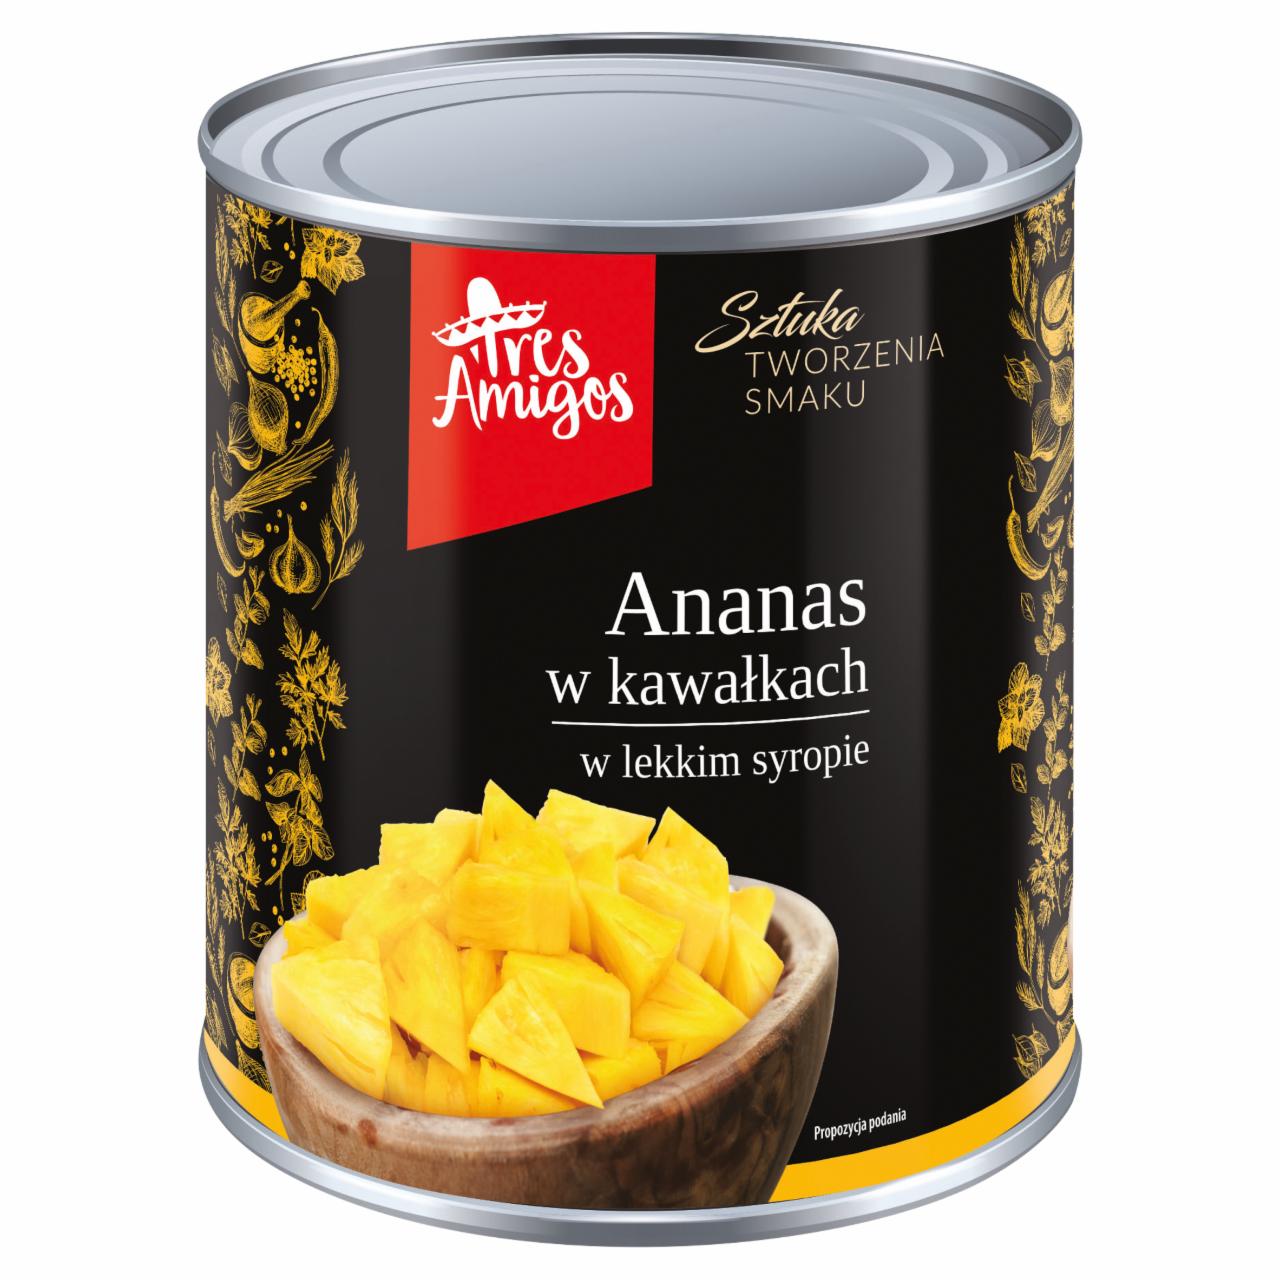 Zdjęcia - Tres Amigos Ananas w kawałkach w lekkim syropie 3,05 kg